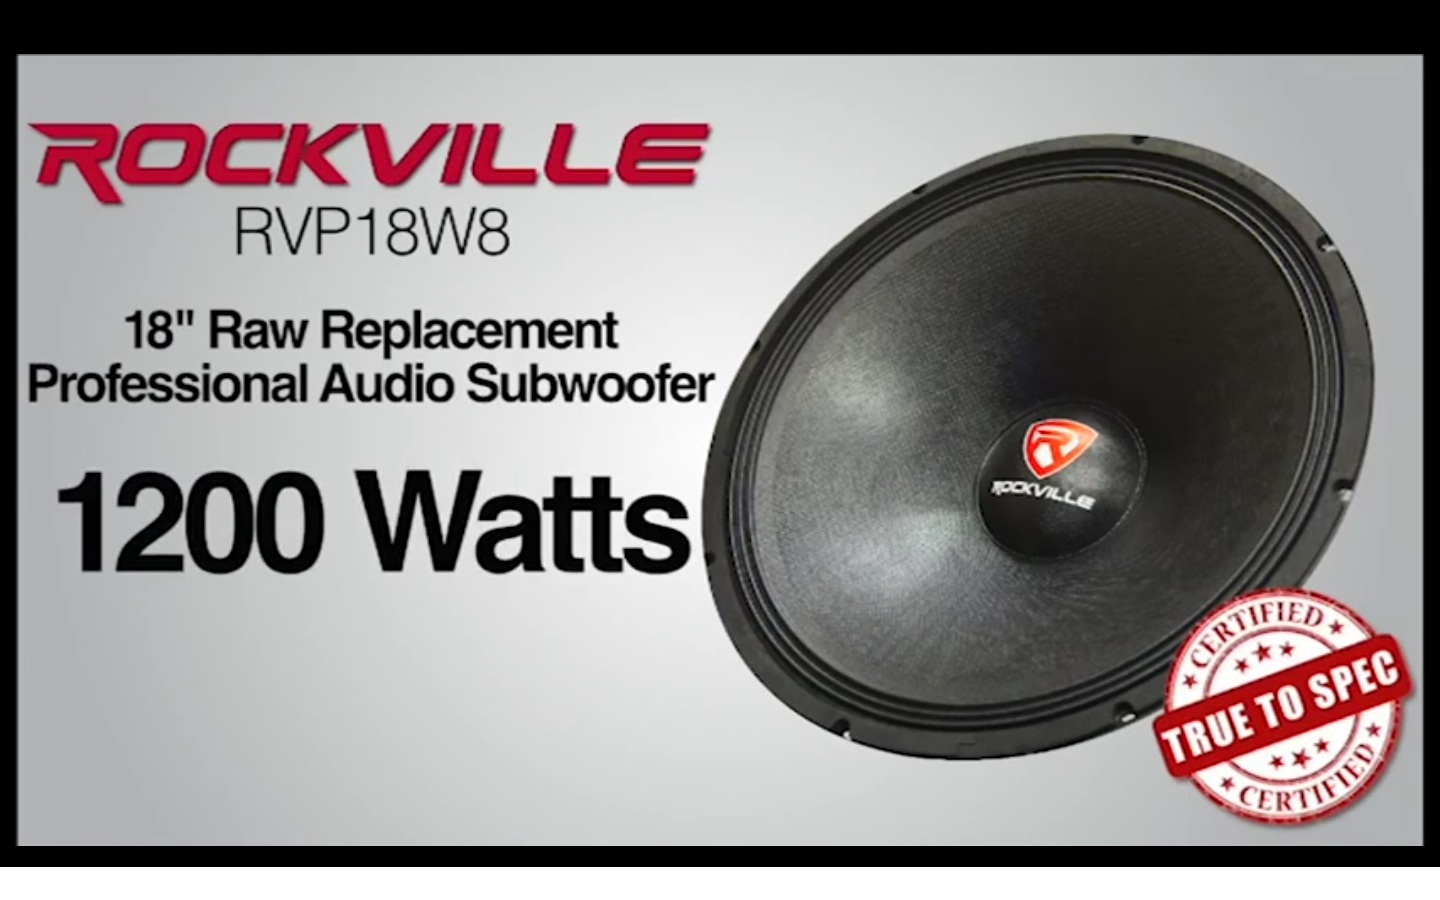 Rockville RVP18W8 1200 Watt 18